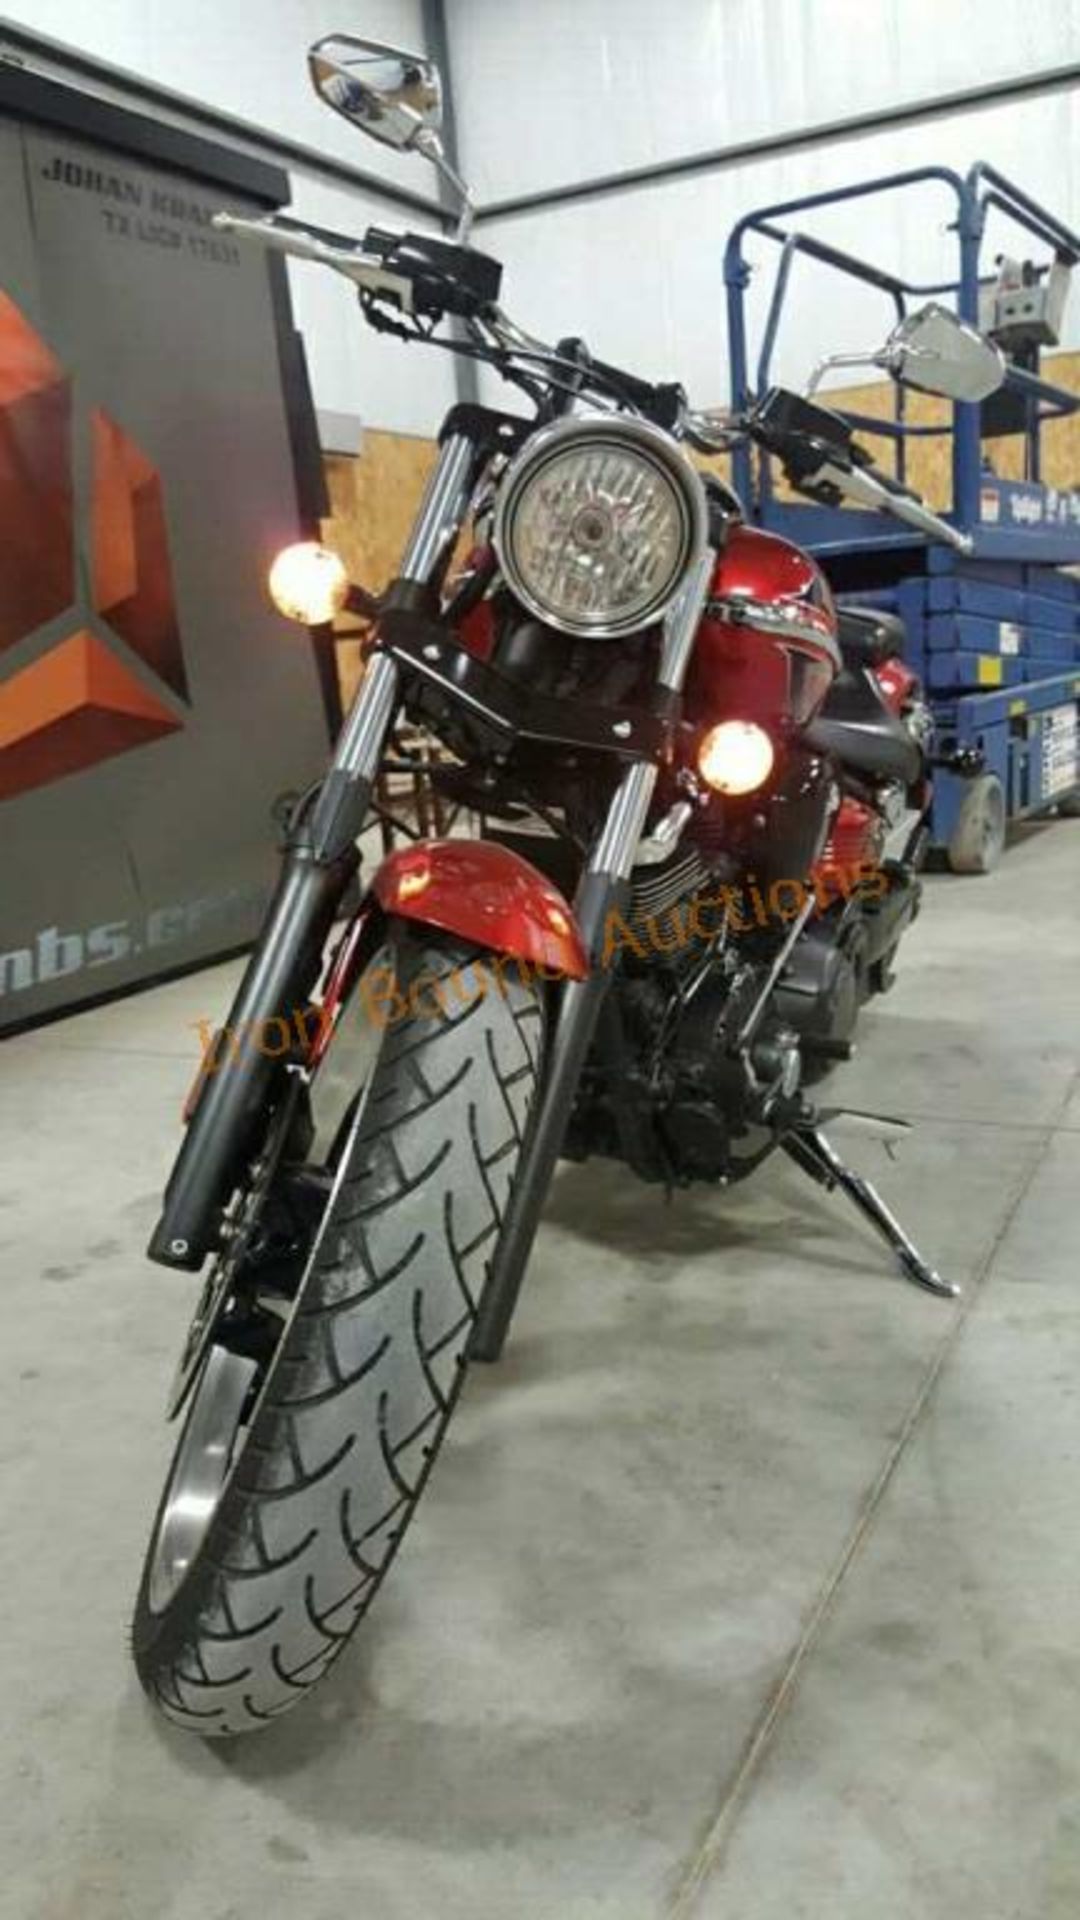 2010 Yamaha Raider 1900 Motorcycle - Image 9 of 23